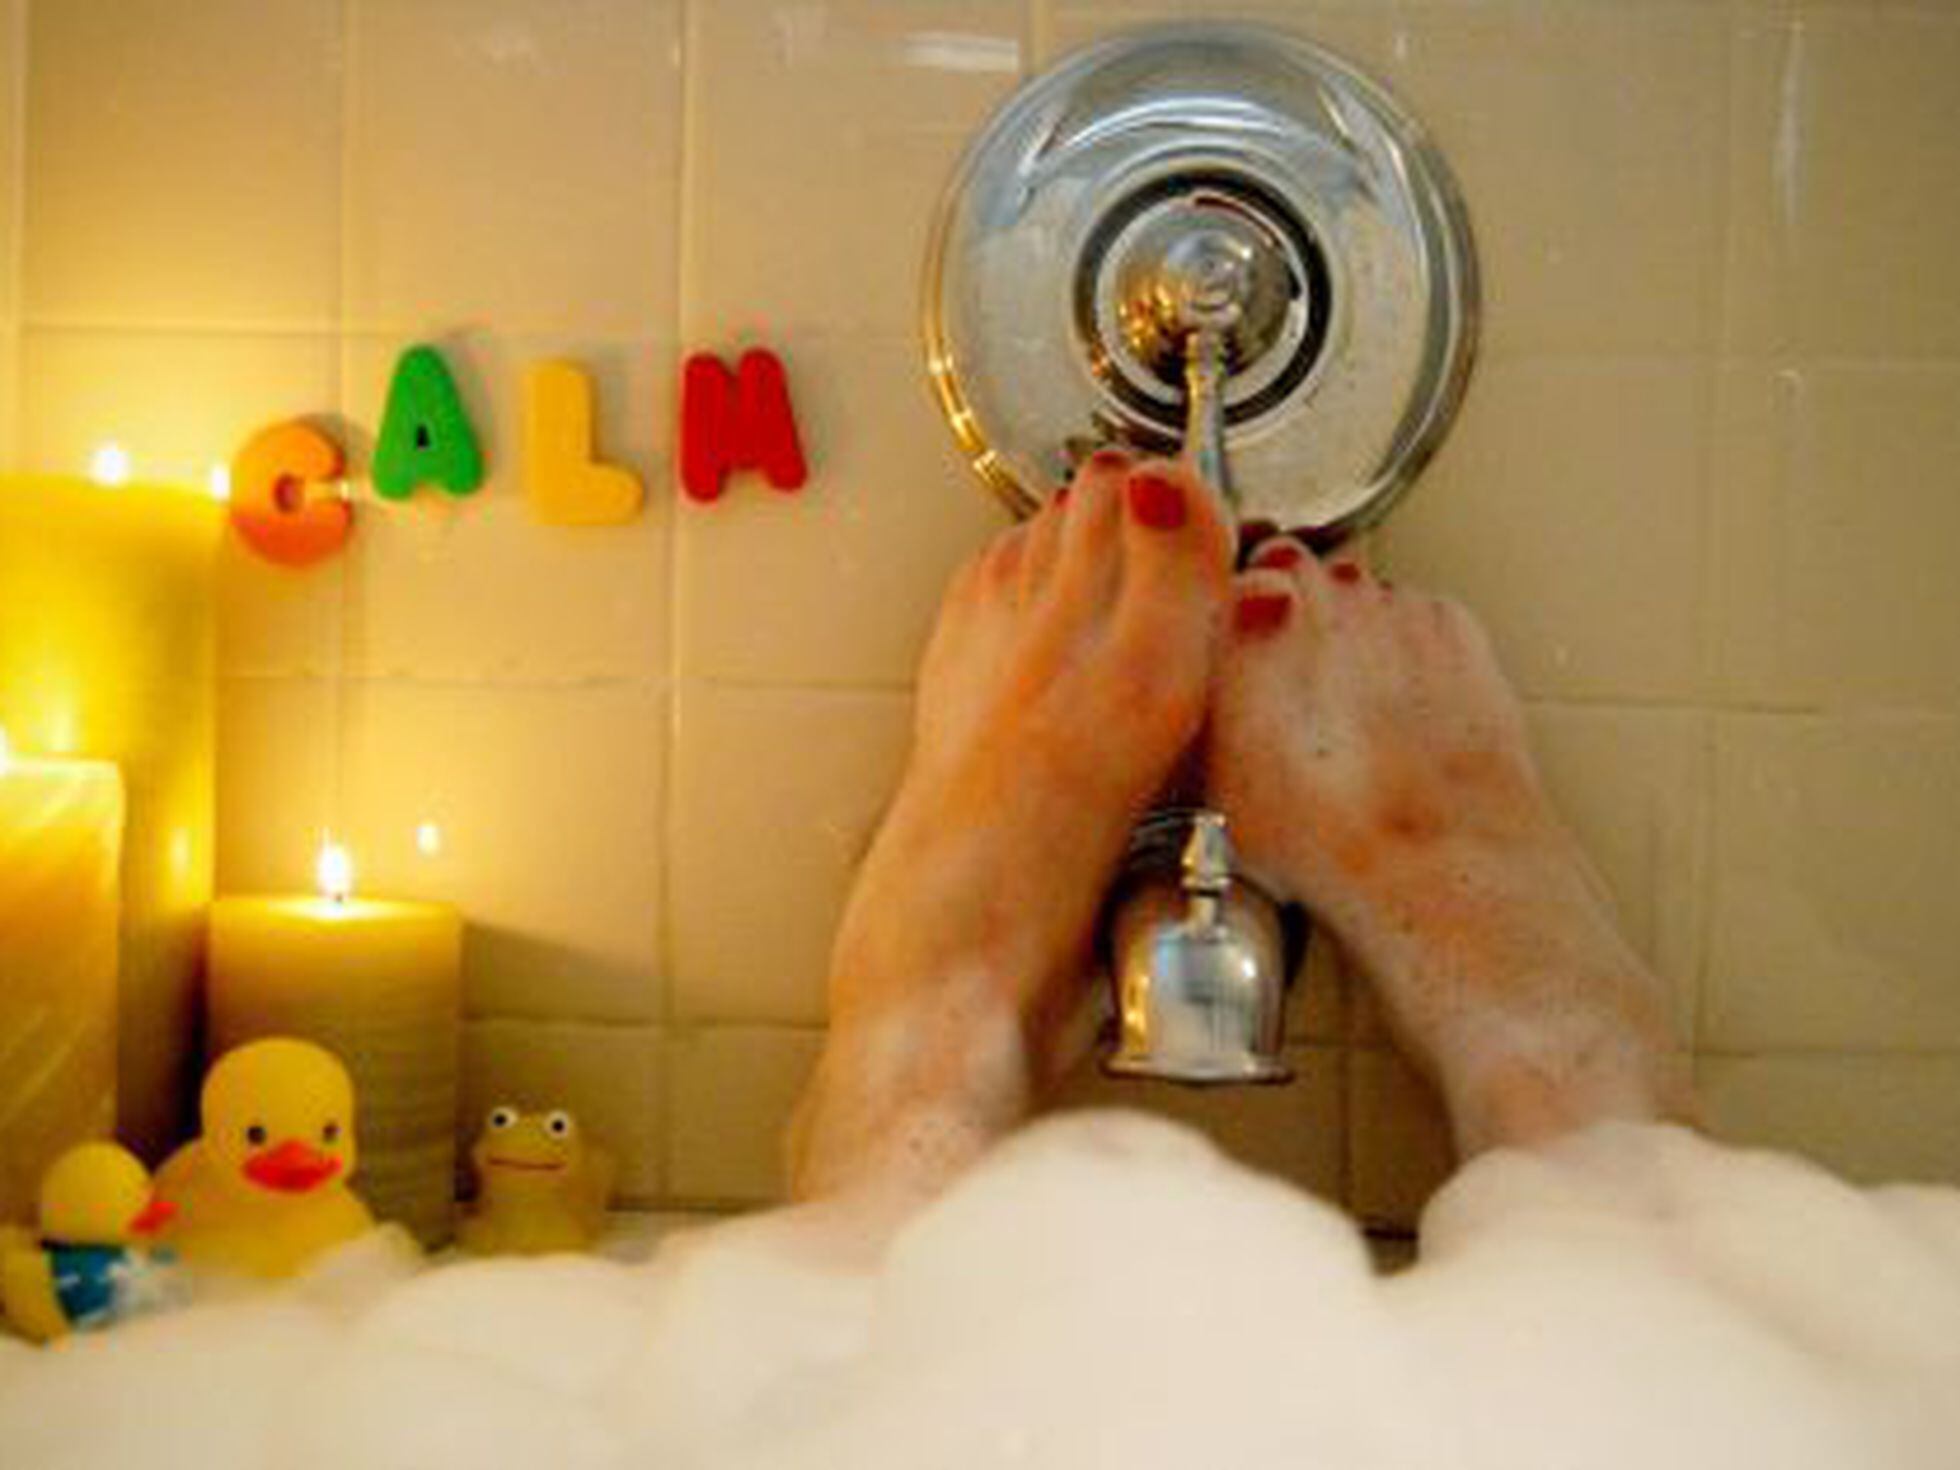 Un baño caliente y otras que parecen relajantes y pueden mal | | BuenaVida EL PAÍS